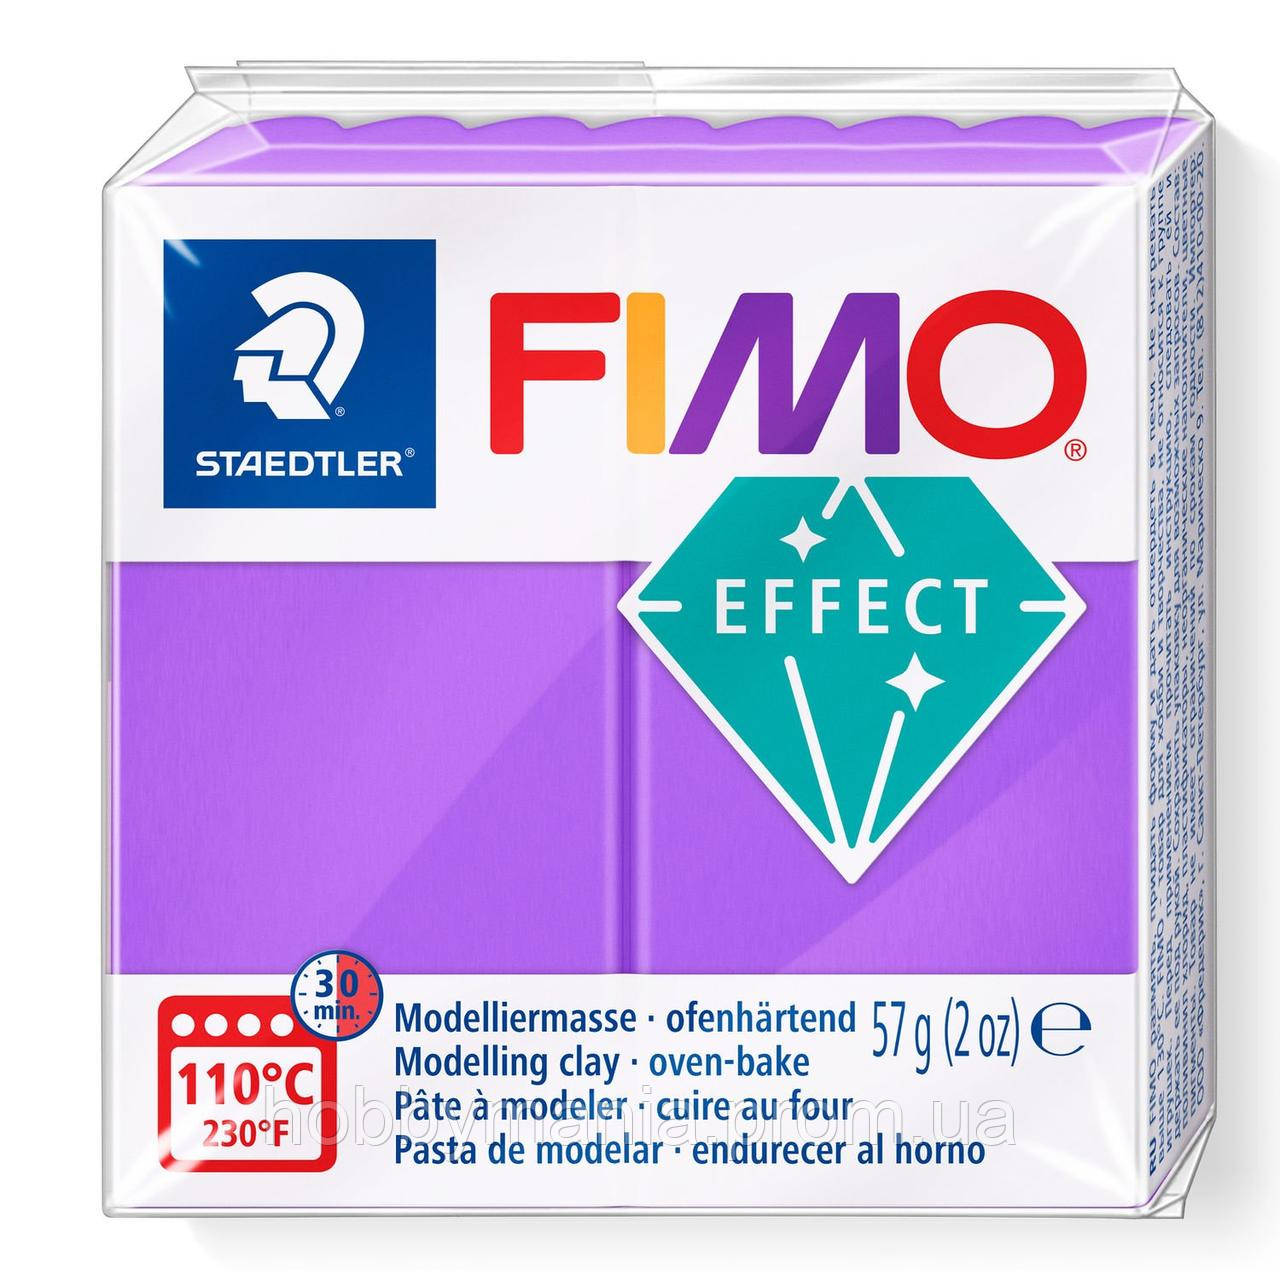 Fimo Effect translucent purple Фімоефект Фіолетова напівпрозора 8020-604 — розпродажу